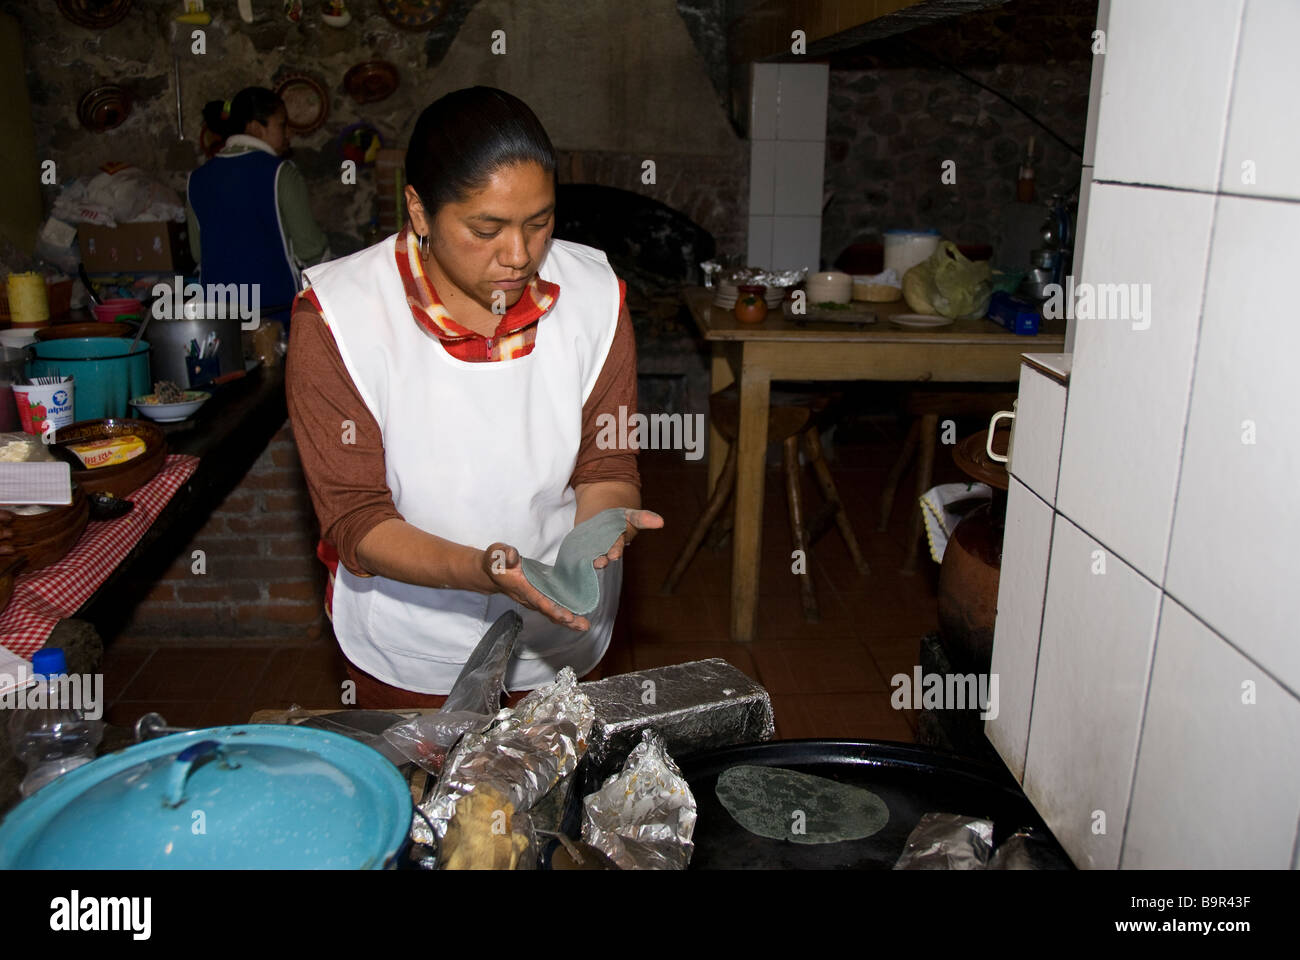 La cuisine mexicaine, préparer les tacos Banque D'Images